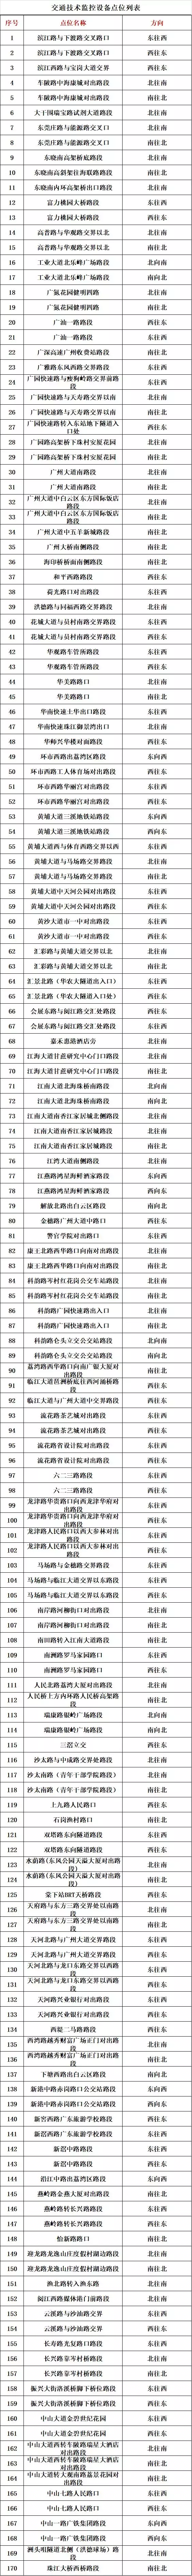 明天启用！广州新增170电子眼！确认过都在这些地方……